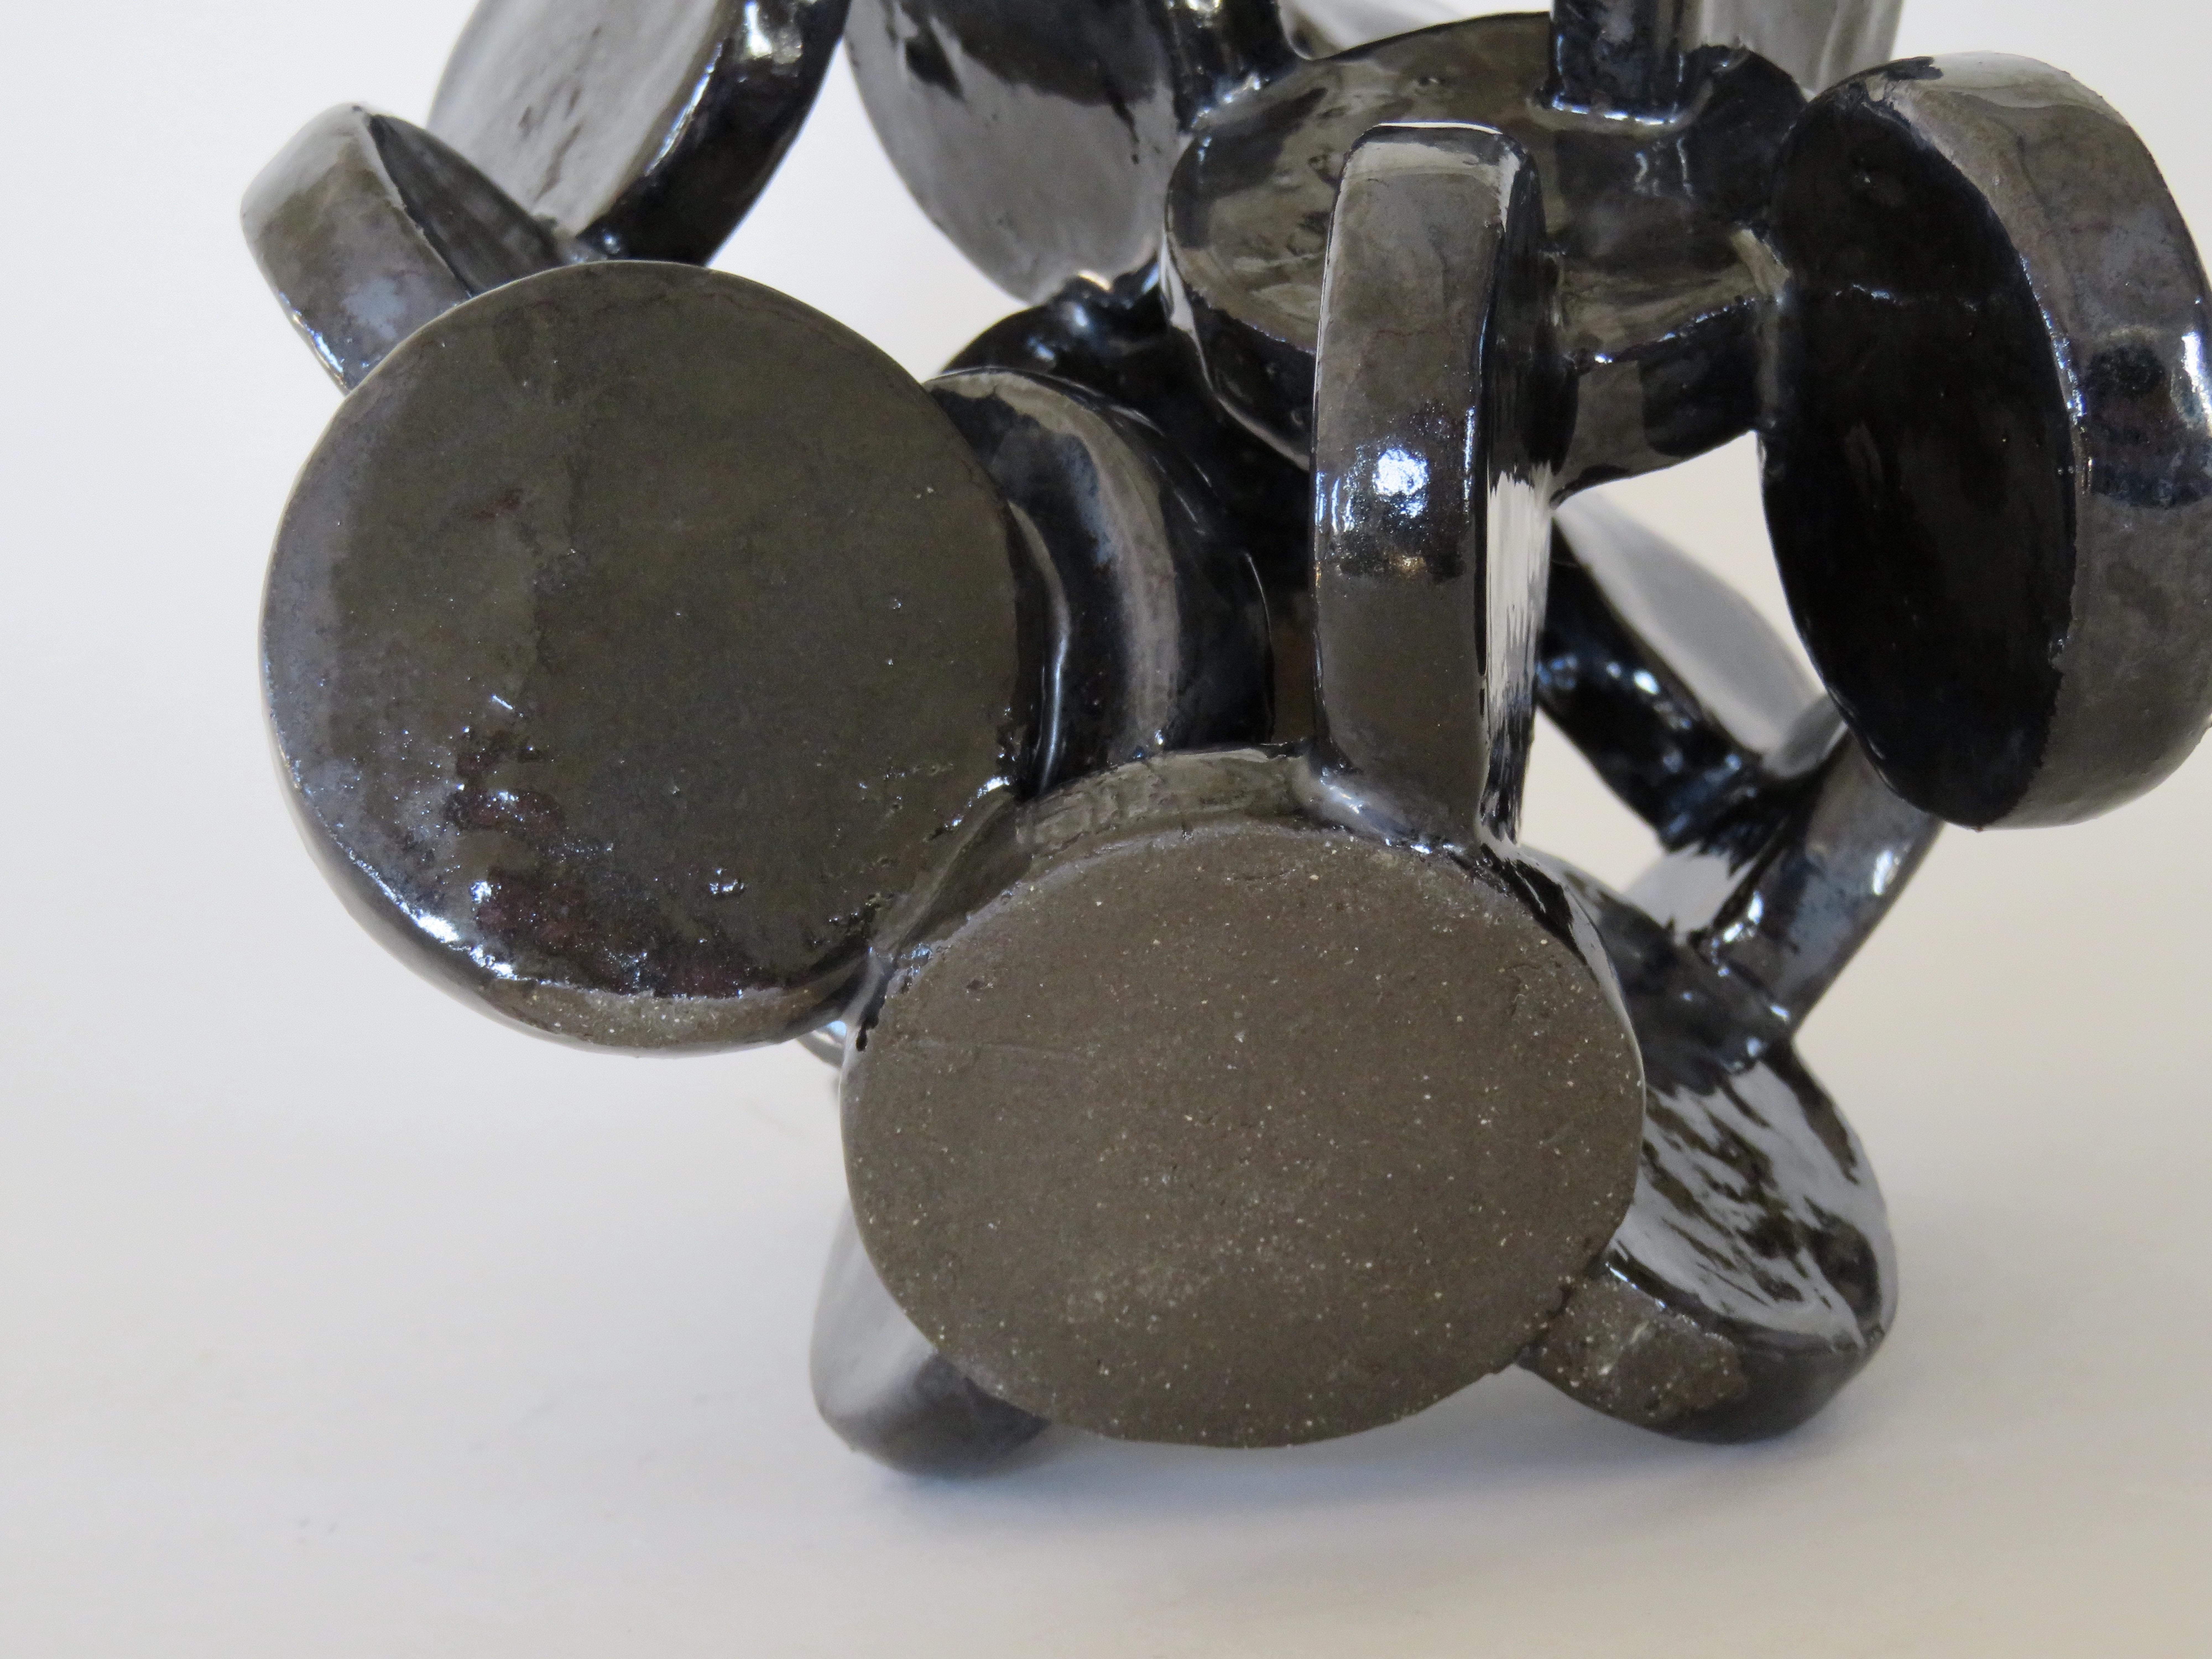 Shiny Black Discs, Handbuilt Abstract Ceramic Sculpture 5